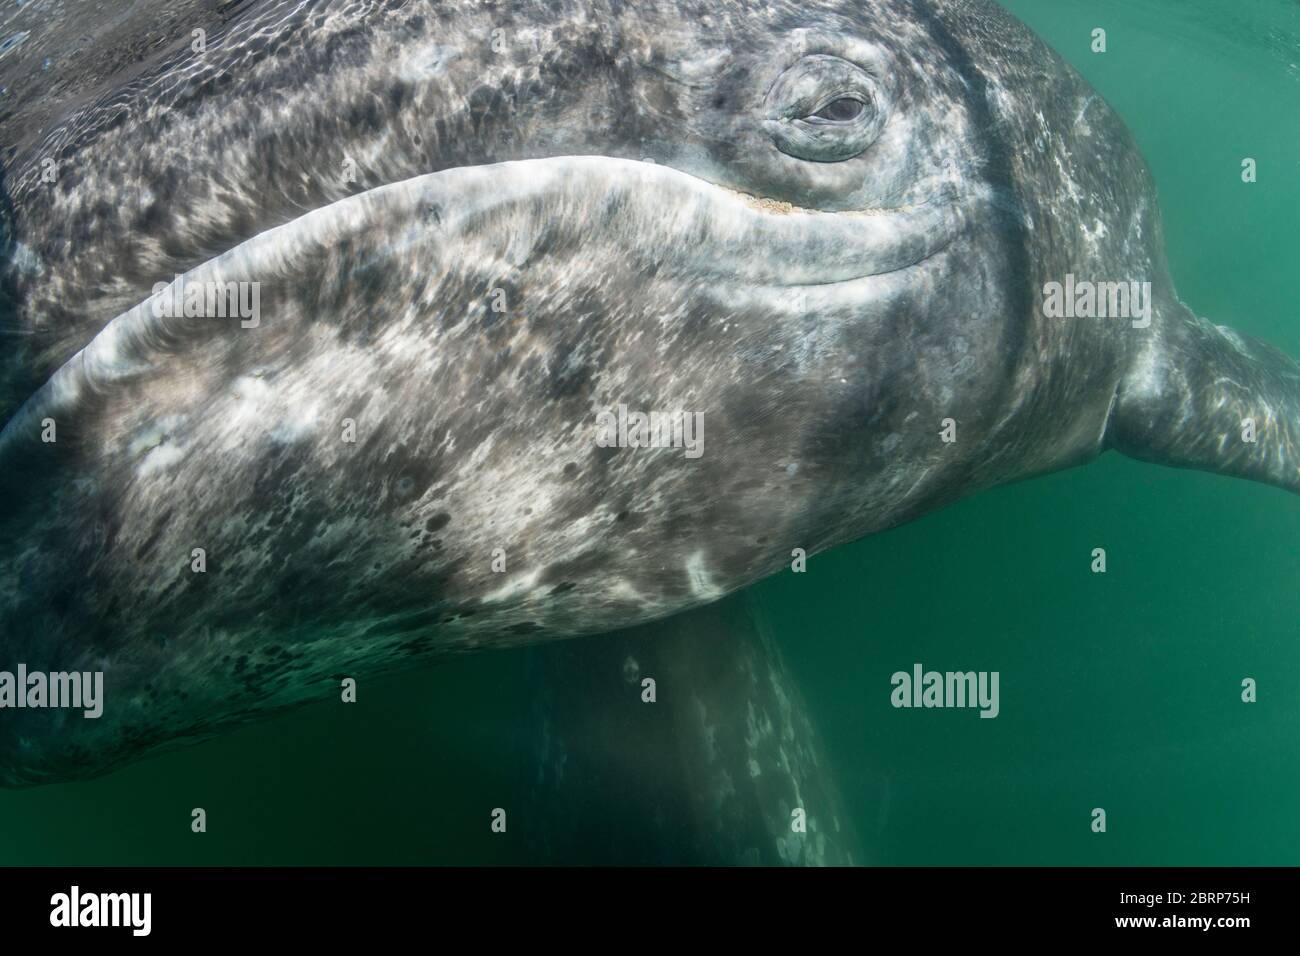 Vitello di balena grigio, Eschrichtius robustus, Laguna di San Ignacio, Baja, Messico; pidocchi di balena (anfibi) sono visibili lungo la mascella inferiore sotto l'occhio Foto Stock